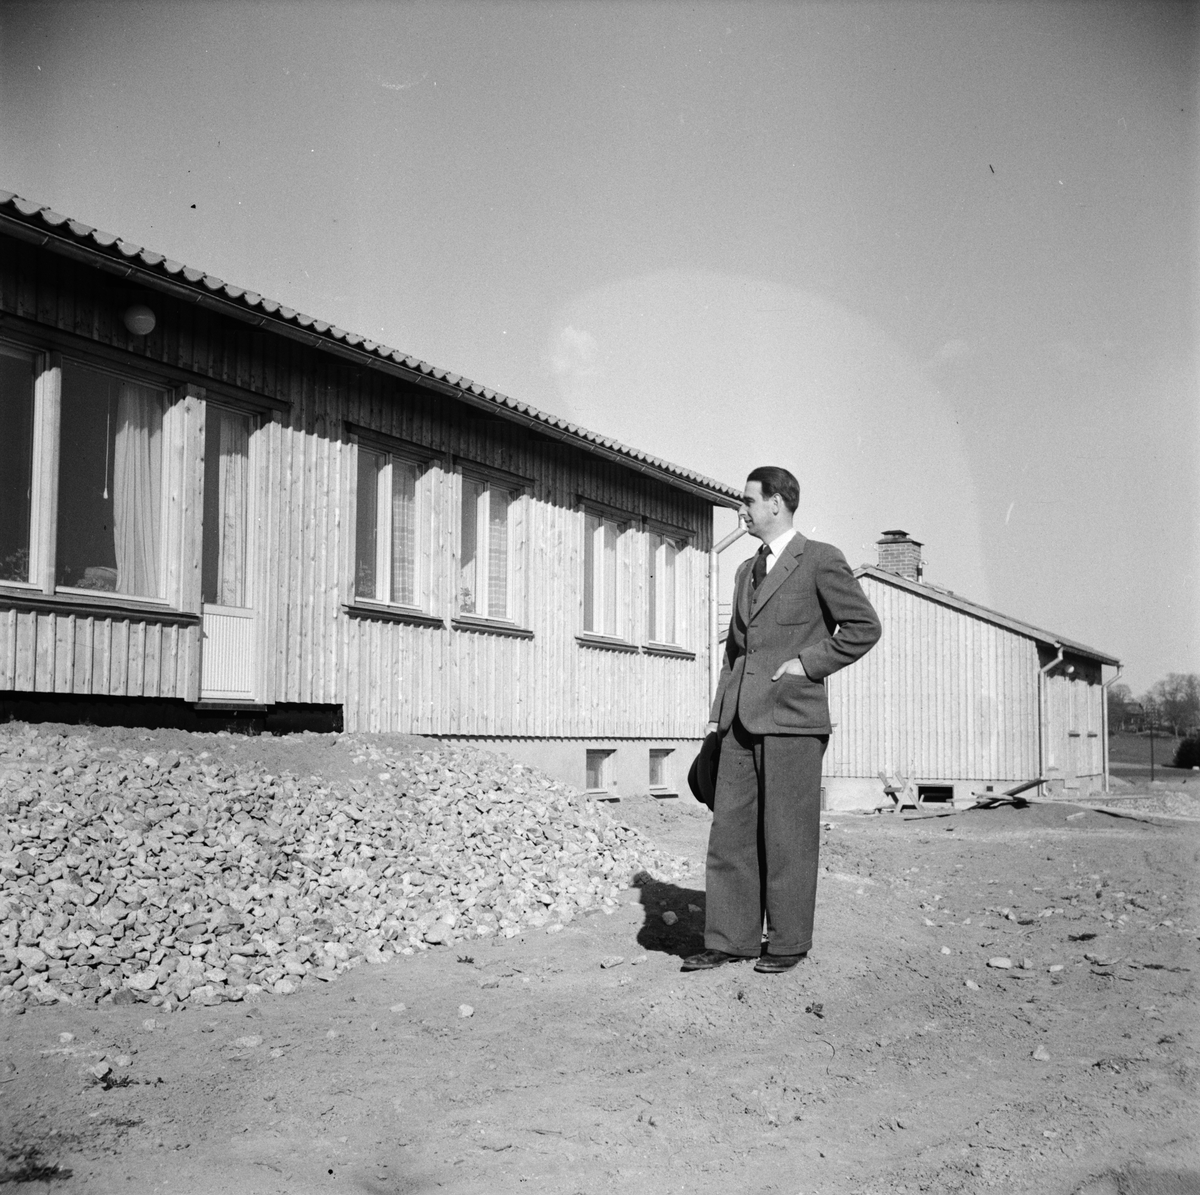 Balingsta storkommun, Uppland 1951